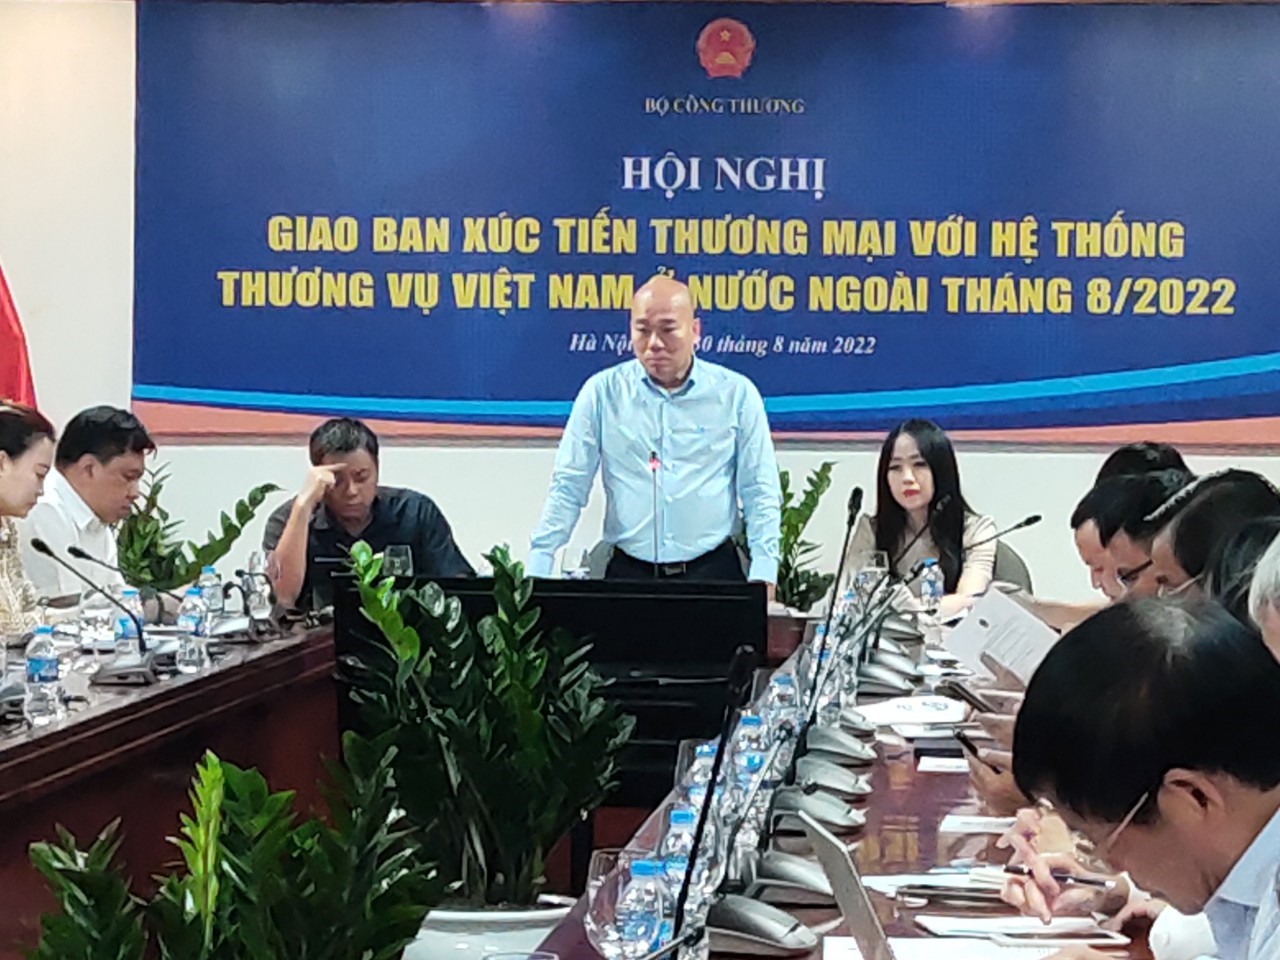 Tại Hội nghị giao ban xúc tiến thương mại với hệ thống Thương vụ Việt Nam ở nước ngoài tháng 8/2022